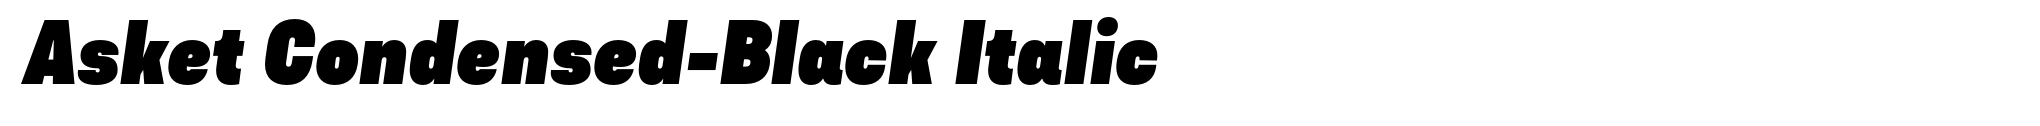 Asket Condensed-Black Italic image